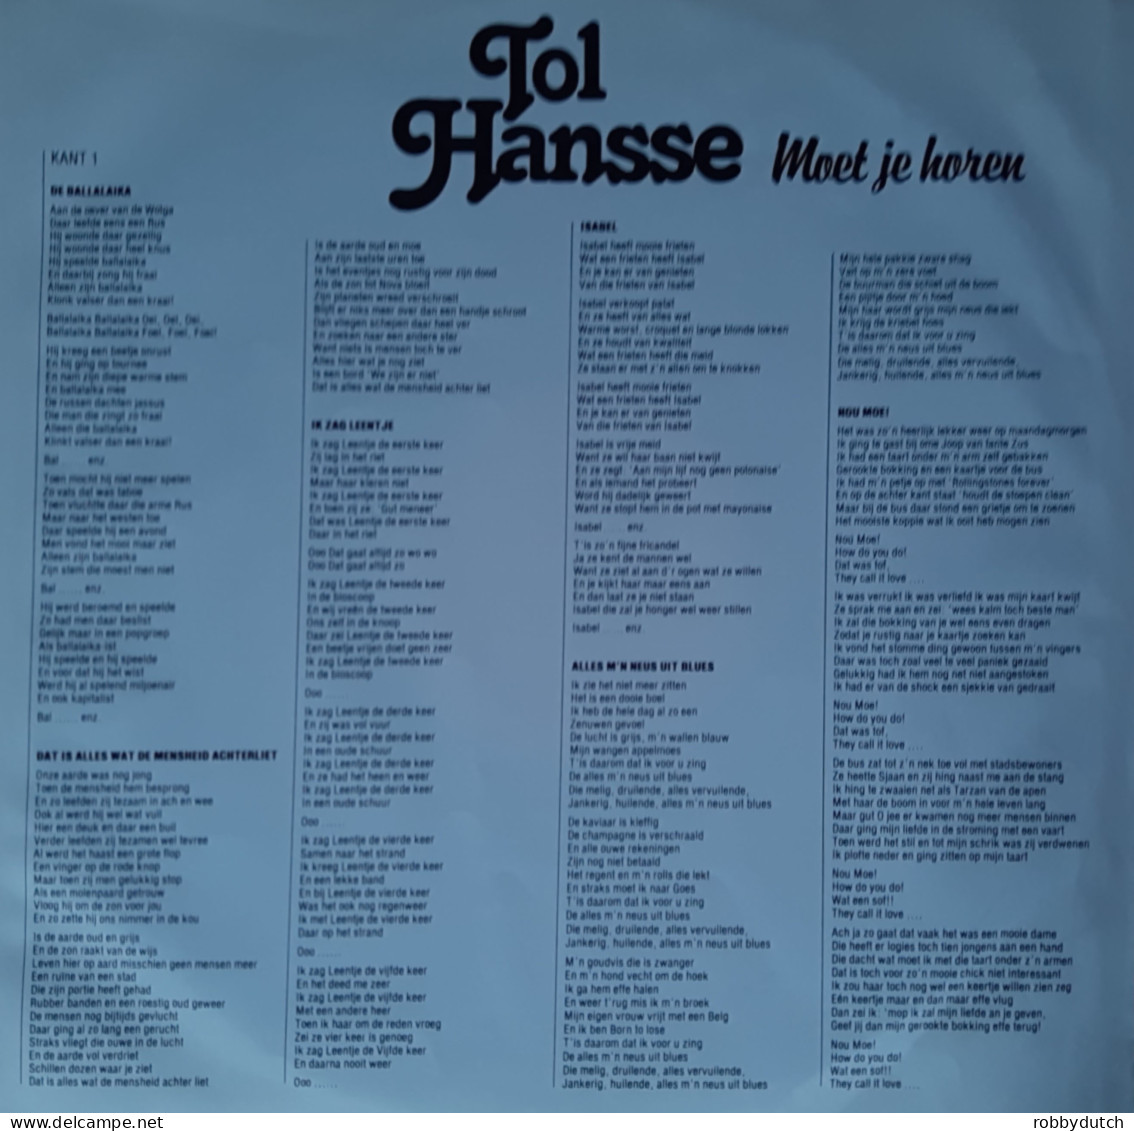 * LP *  TOL HANSSE - MOET JE HOREN (Holland 1980 EX-) - Autres - Musique Néerlandaise